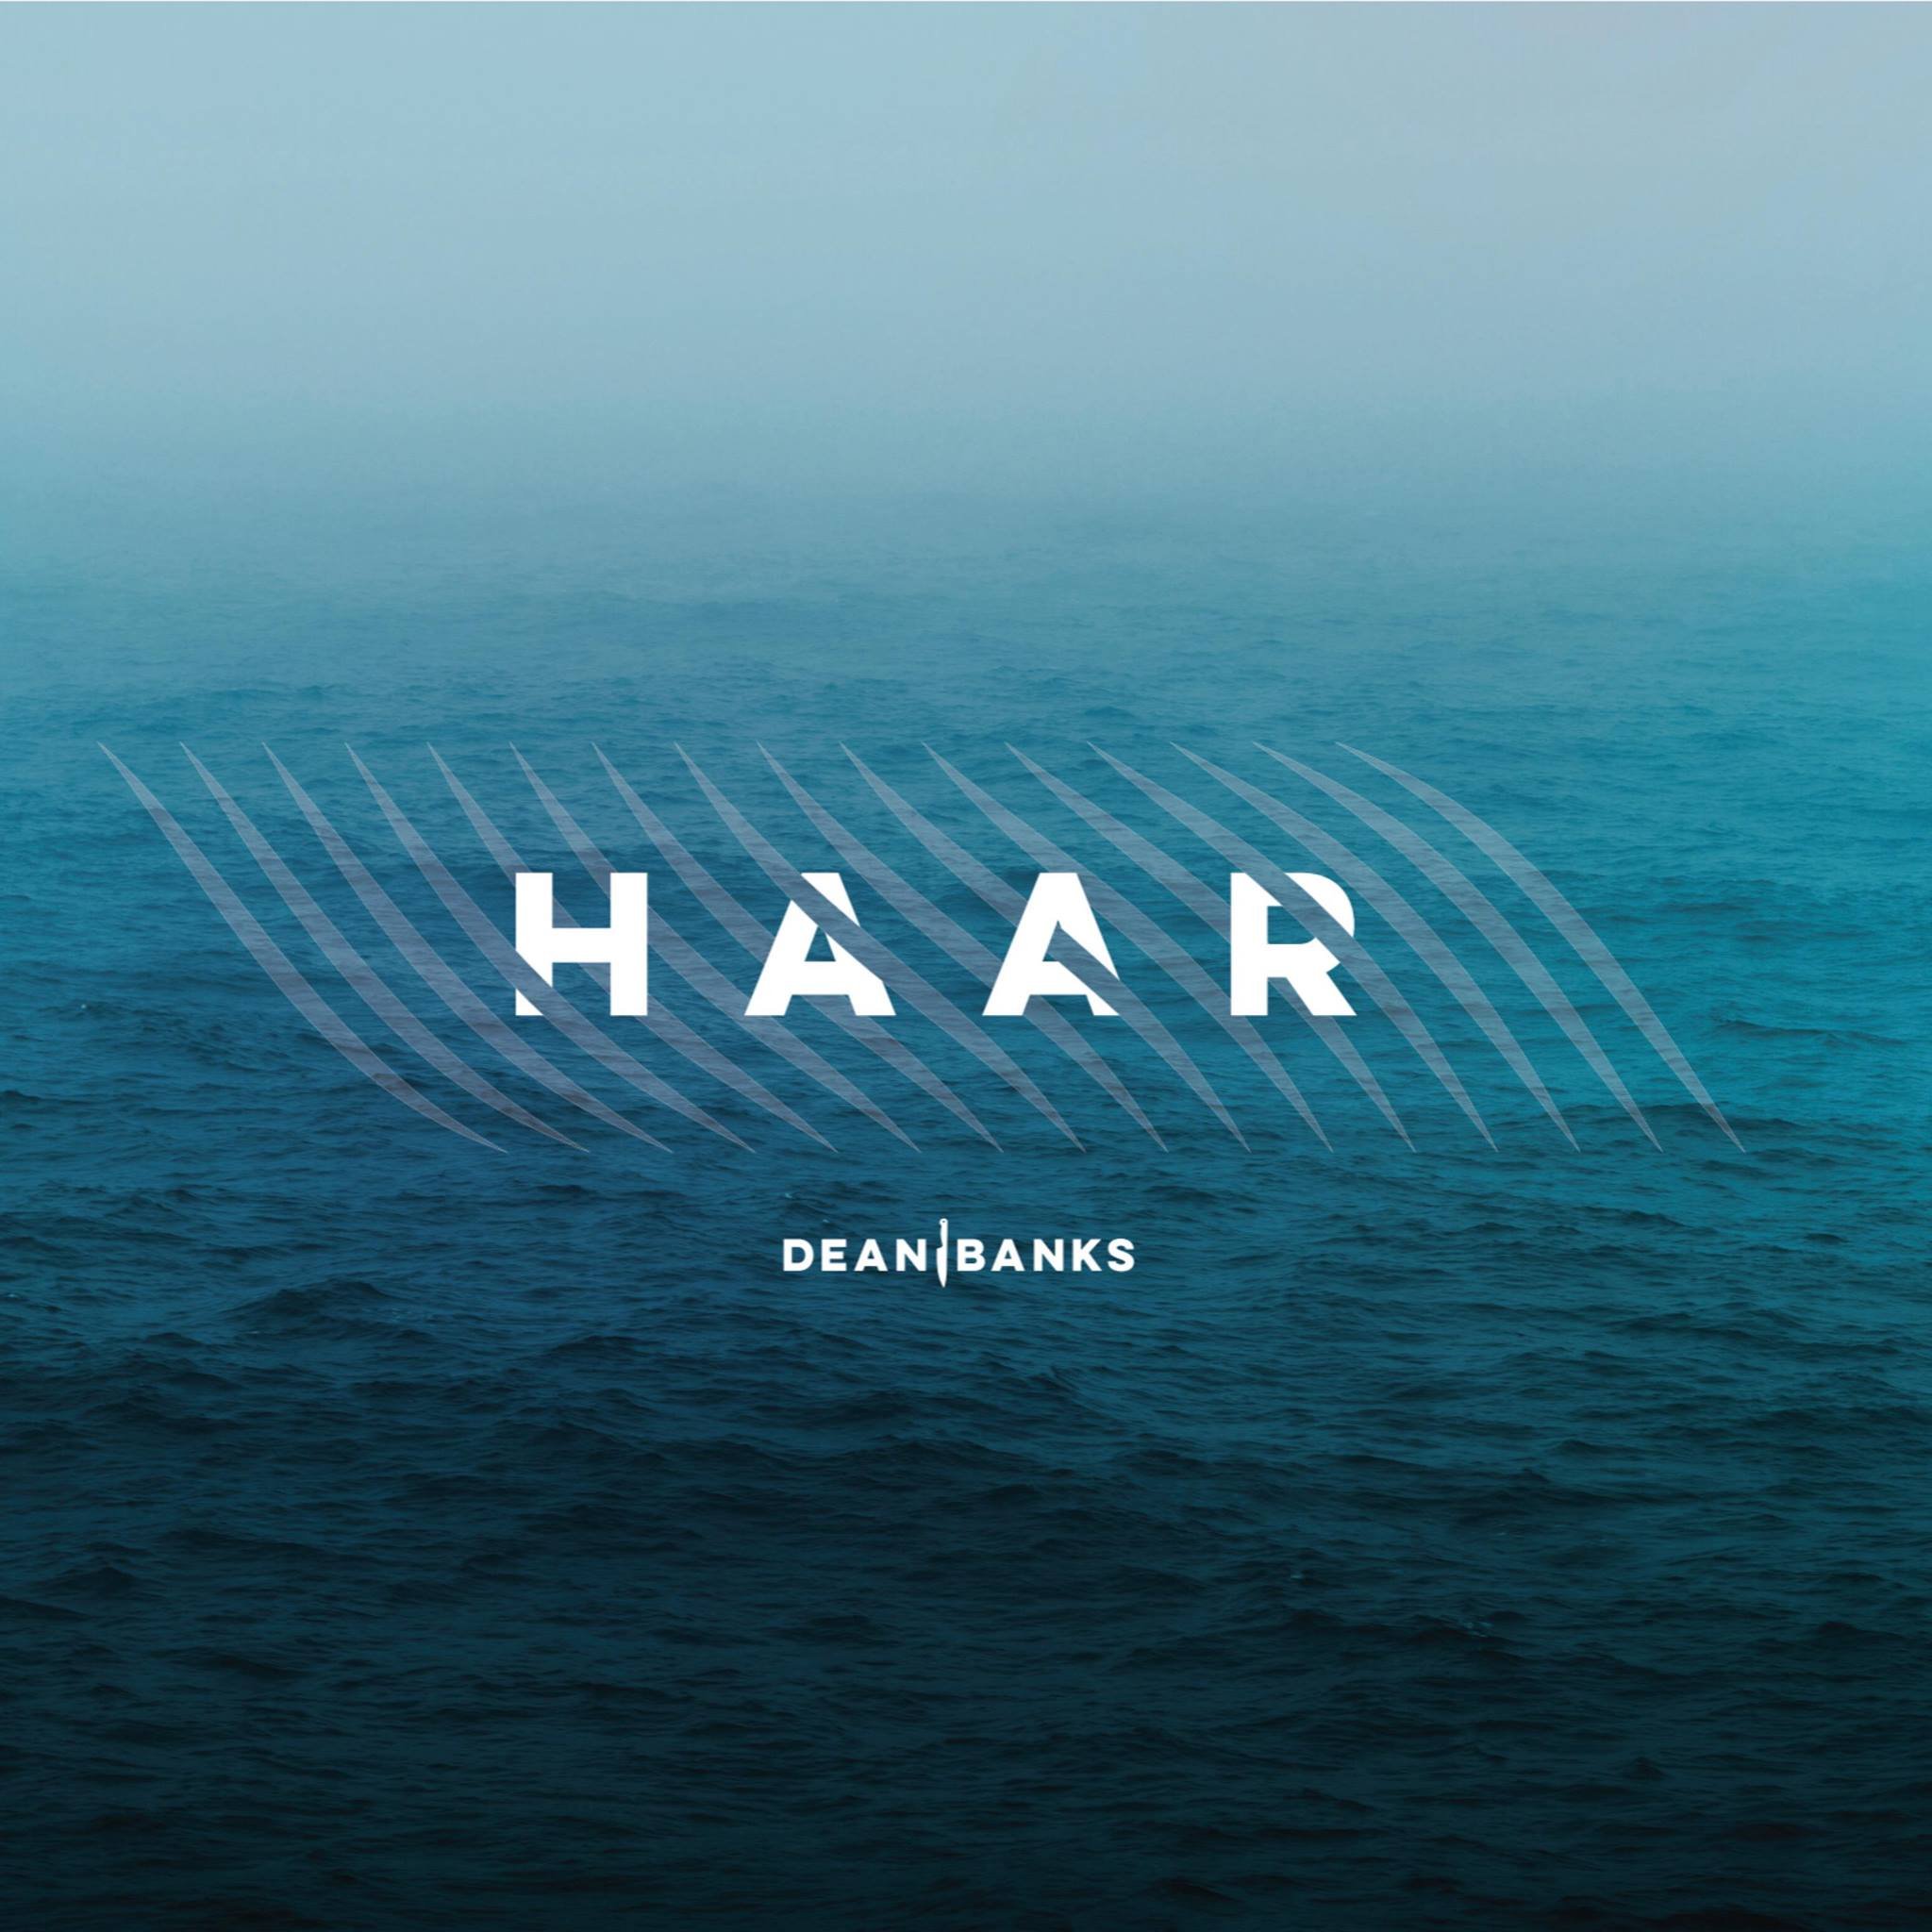 Haar - the first restaurant from Masterchef Finalist Dean Banks.